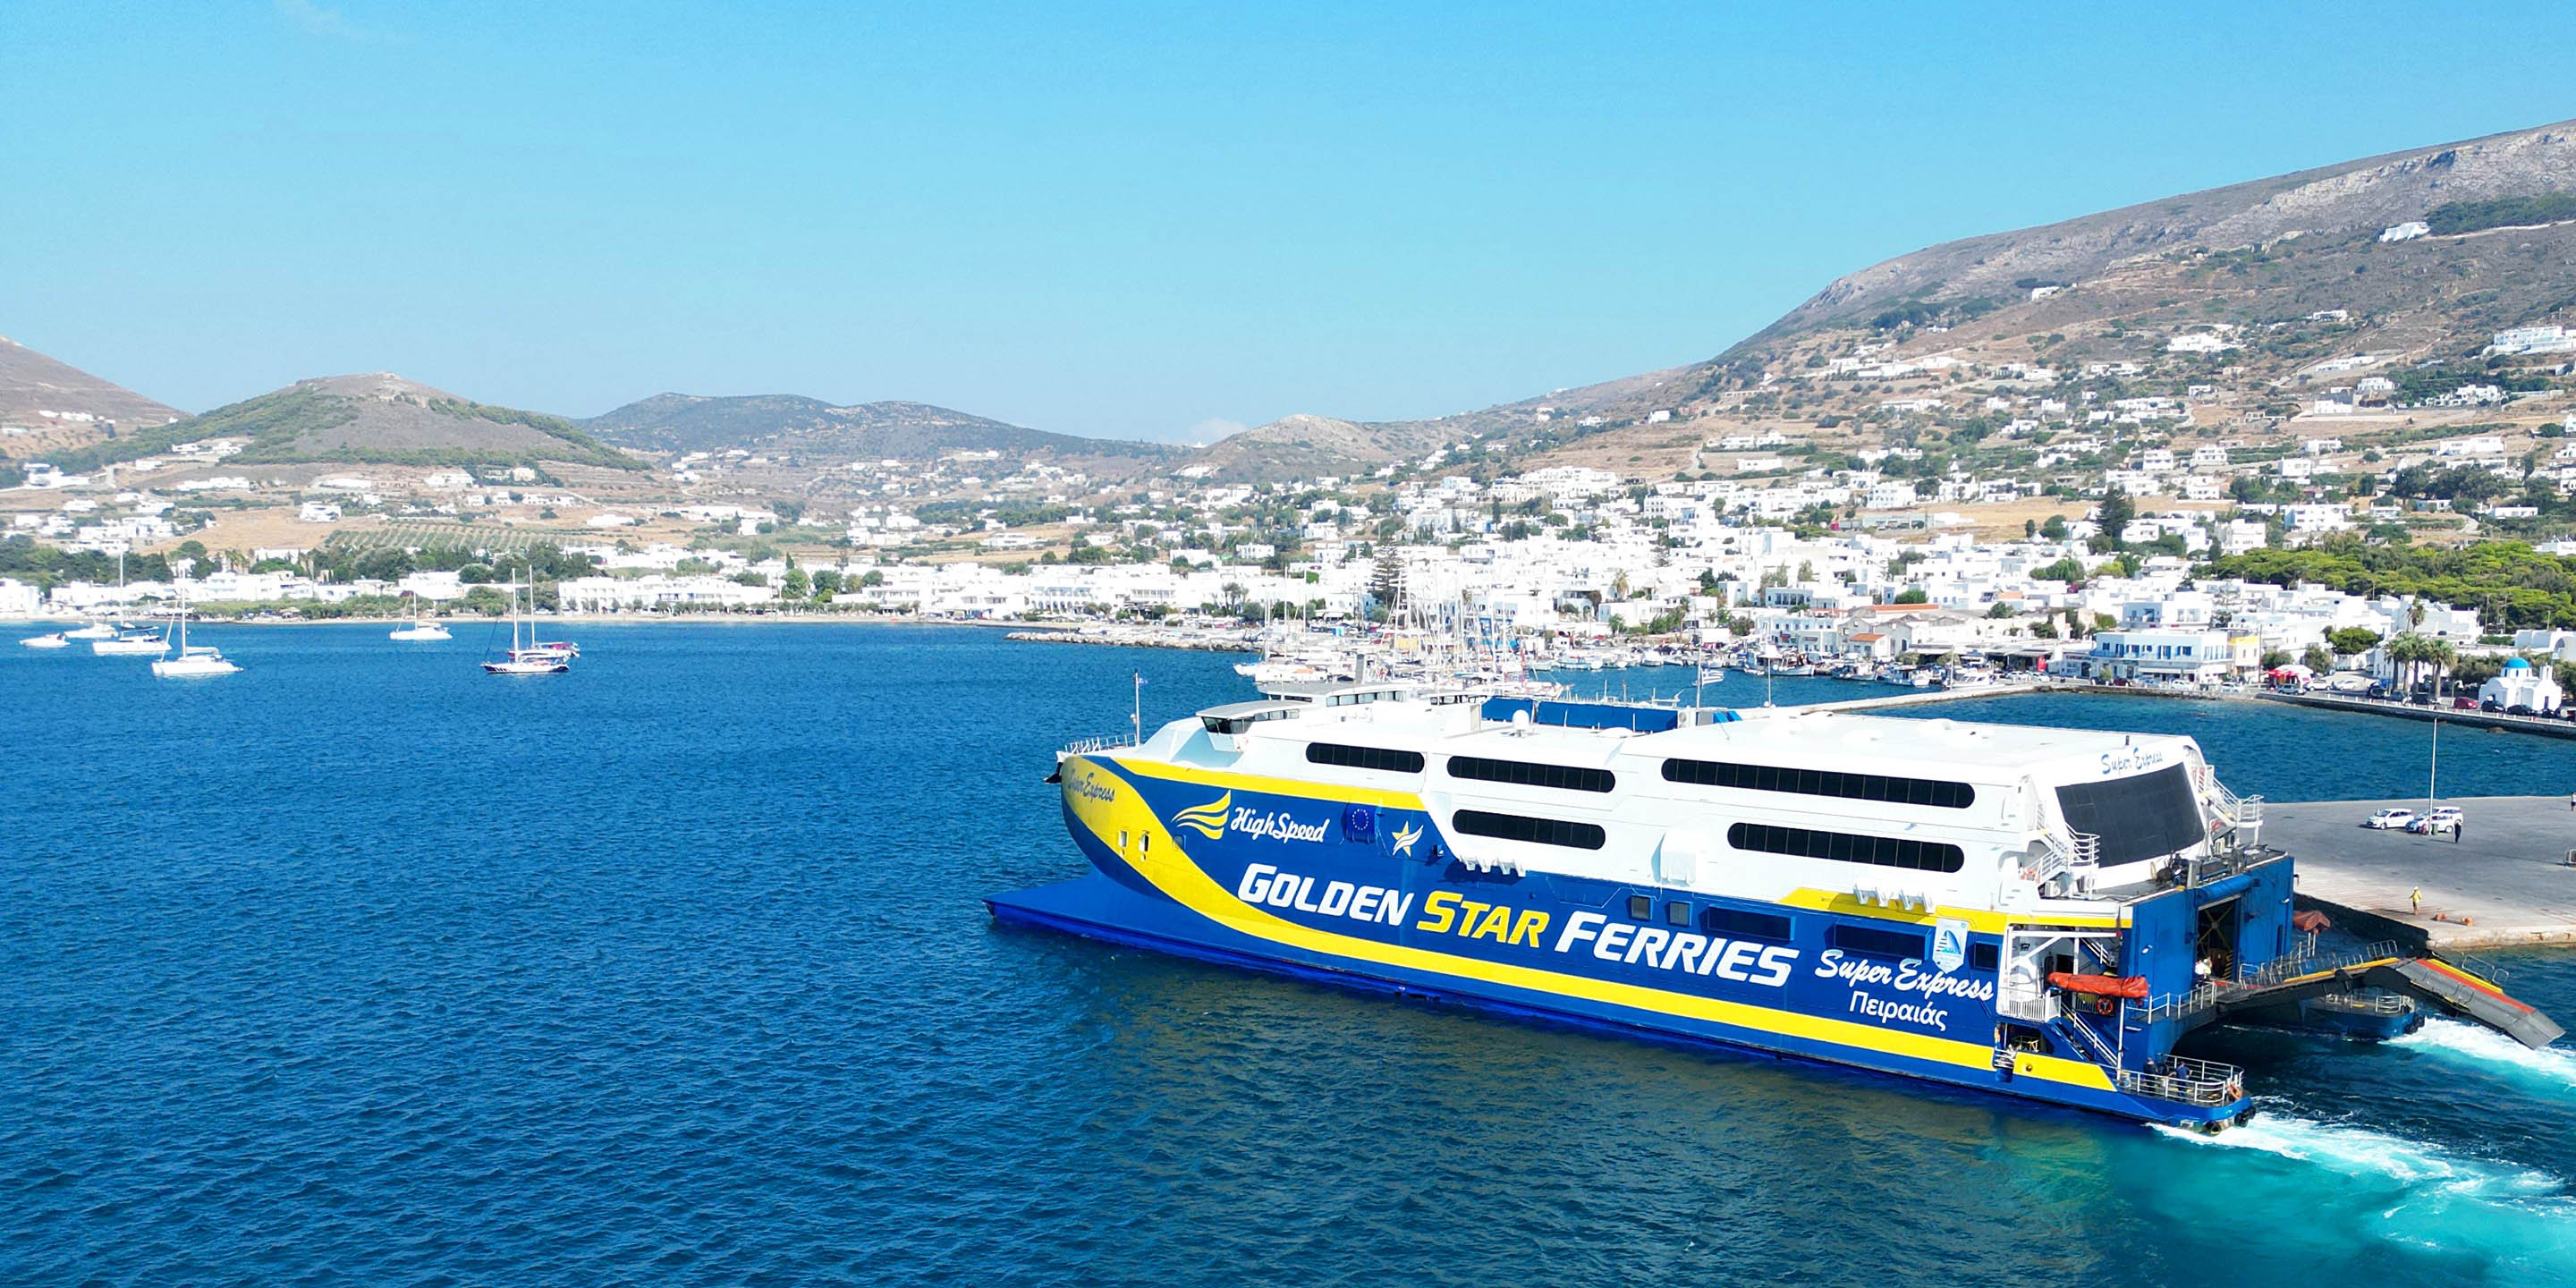 Le ferry à grande vitesse Super Express de Golden Star ferries arrive au port de Parikia à Paros, en provenance de Santorin